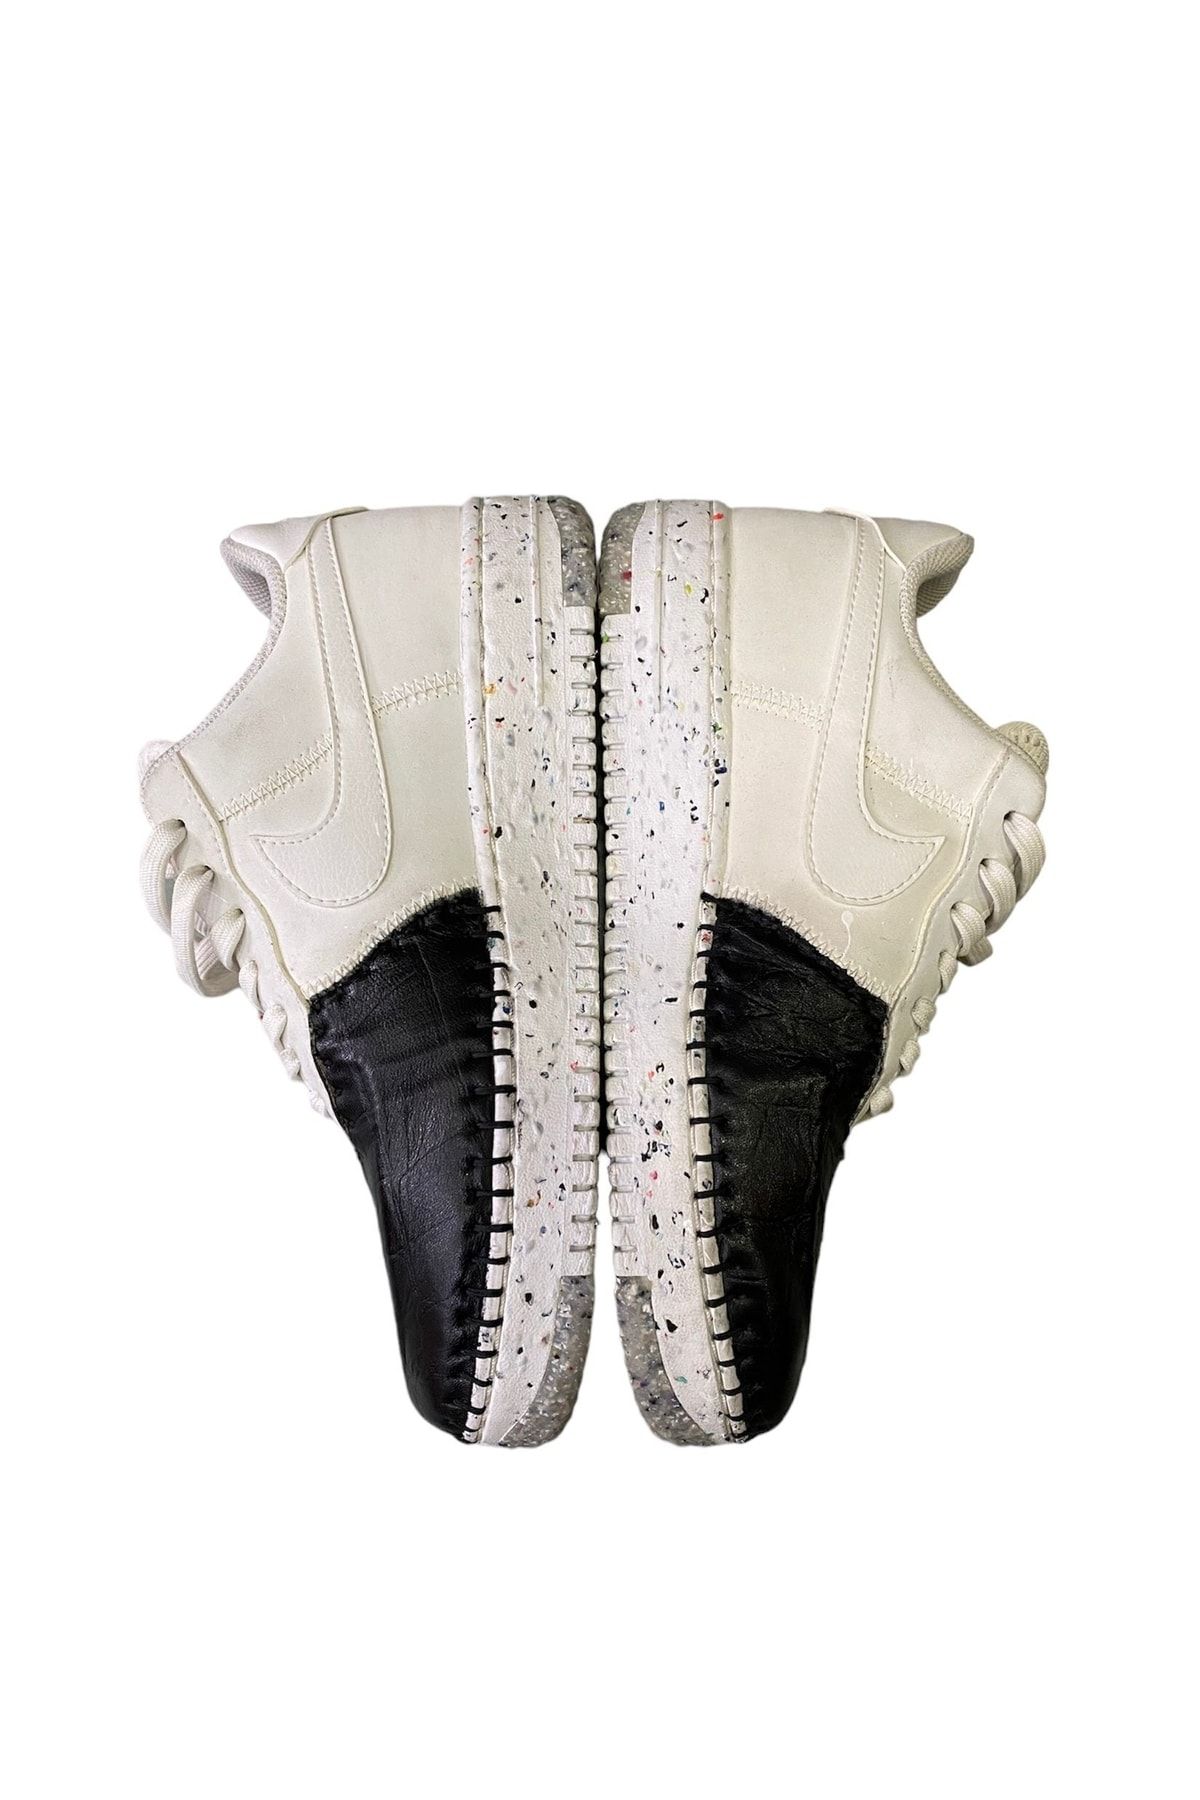 Nike Air Force Black & White Custom Made Shoe